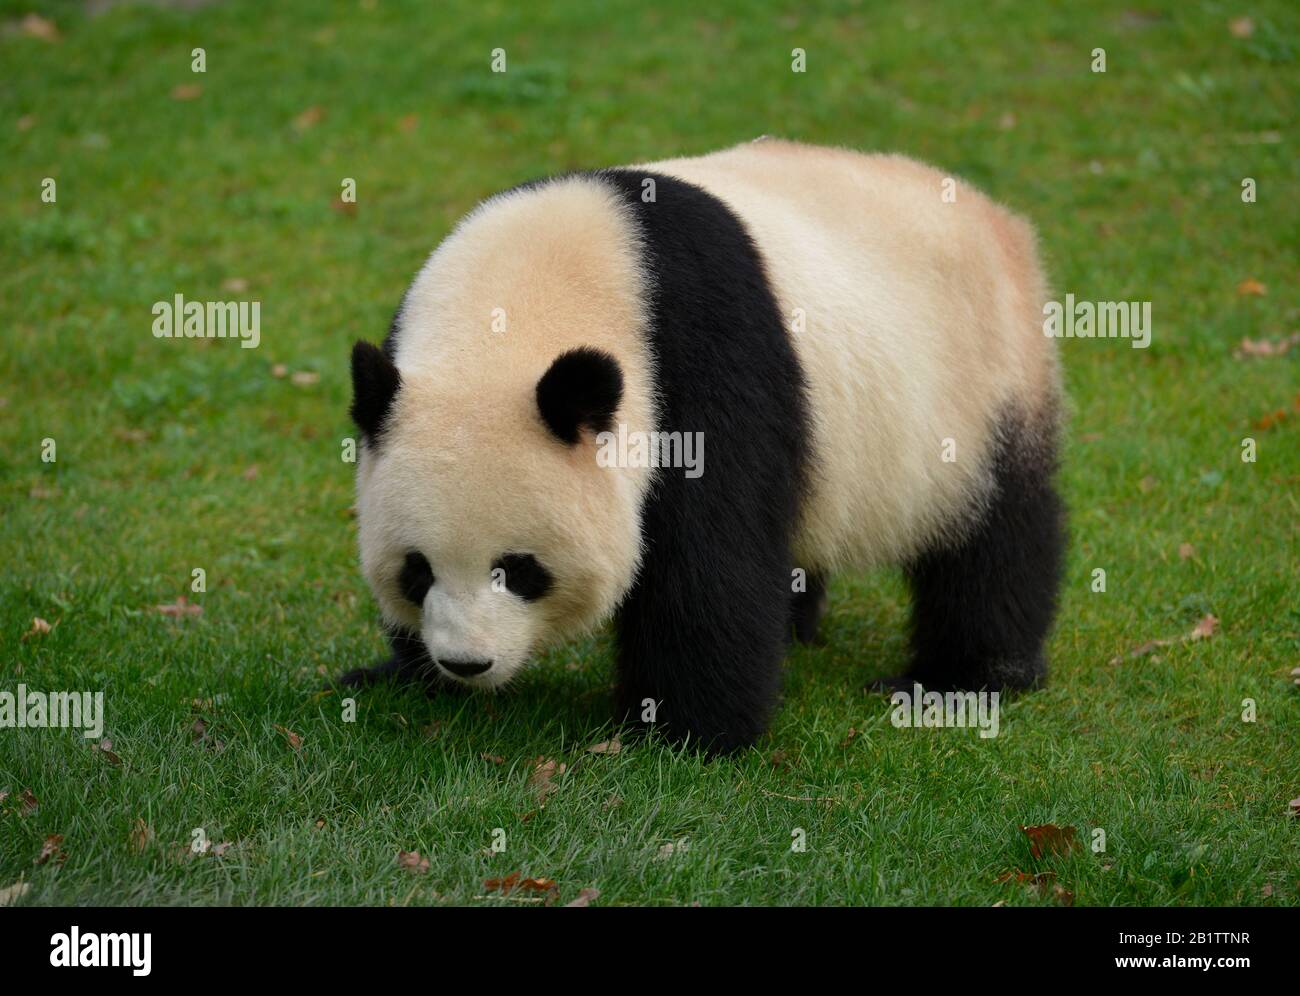 Panda Meng Meng, Zoo, Tiergarten, Mitte, Berlin, Deutschland Banque D'Images